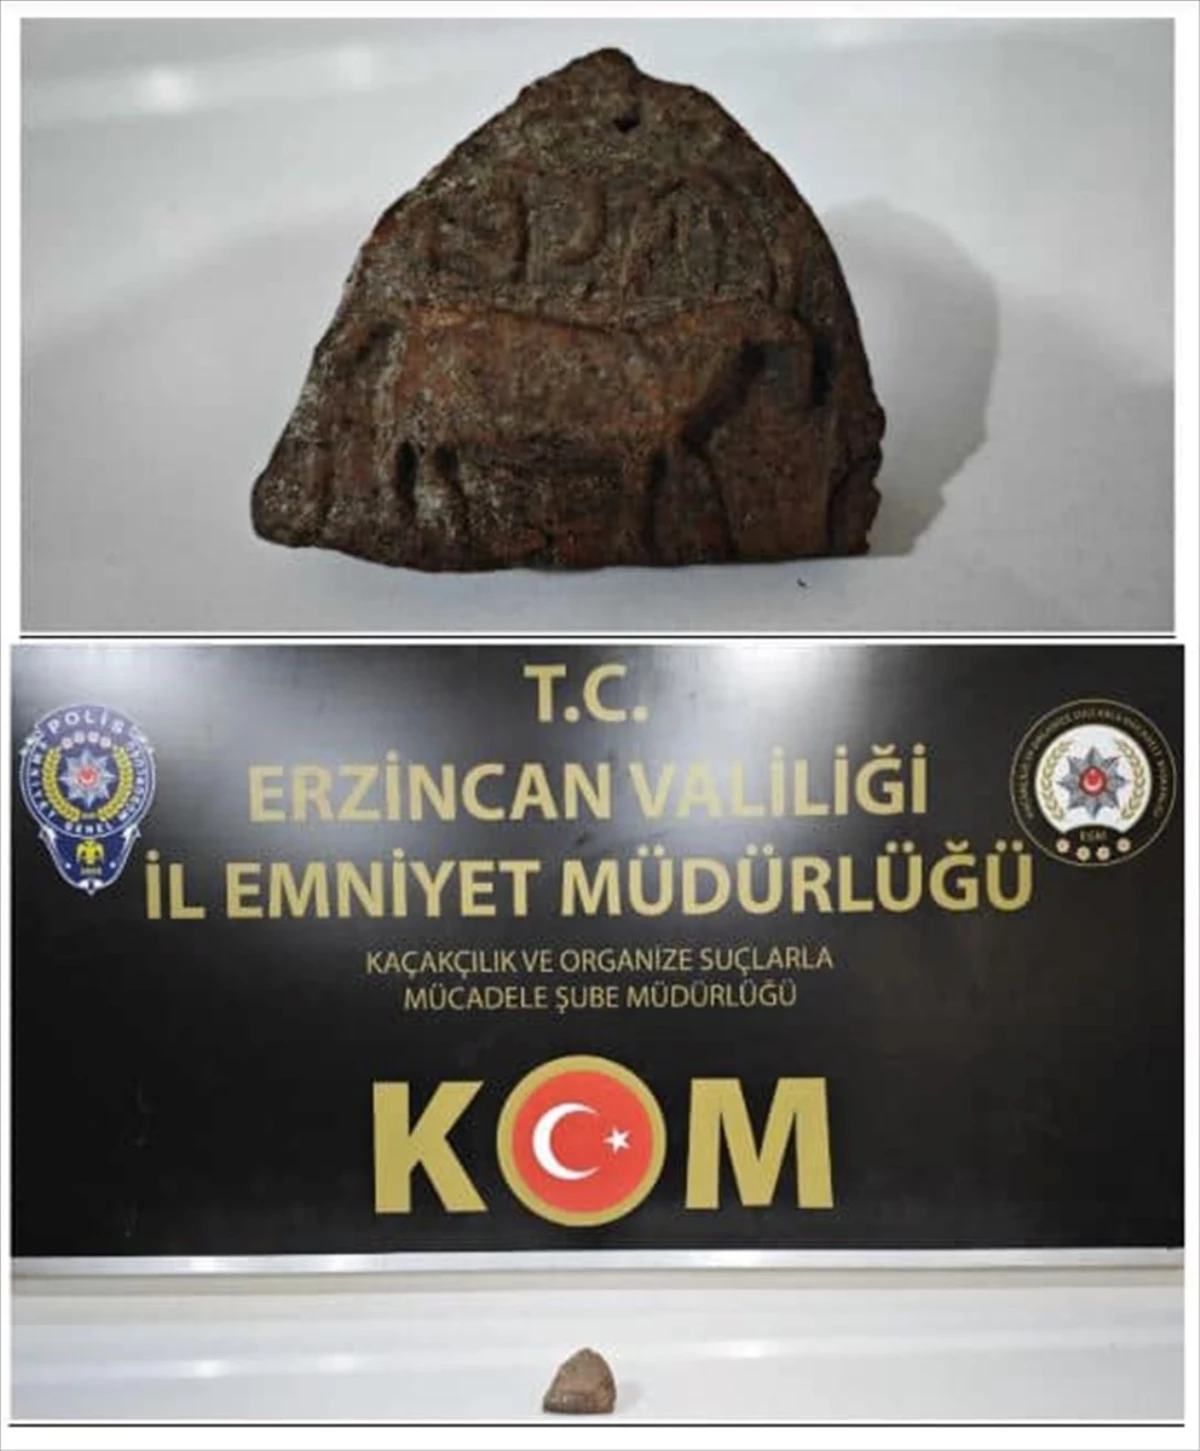 Erzincan'da tarihi eser kaçakçılığı operasyonunda 2 şüpheli gözaltına alındı